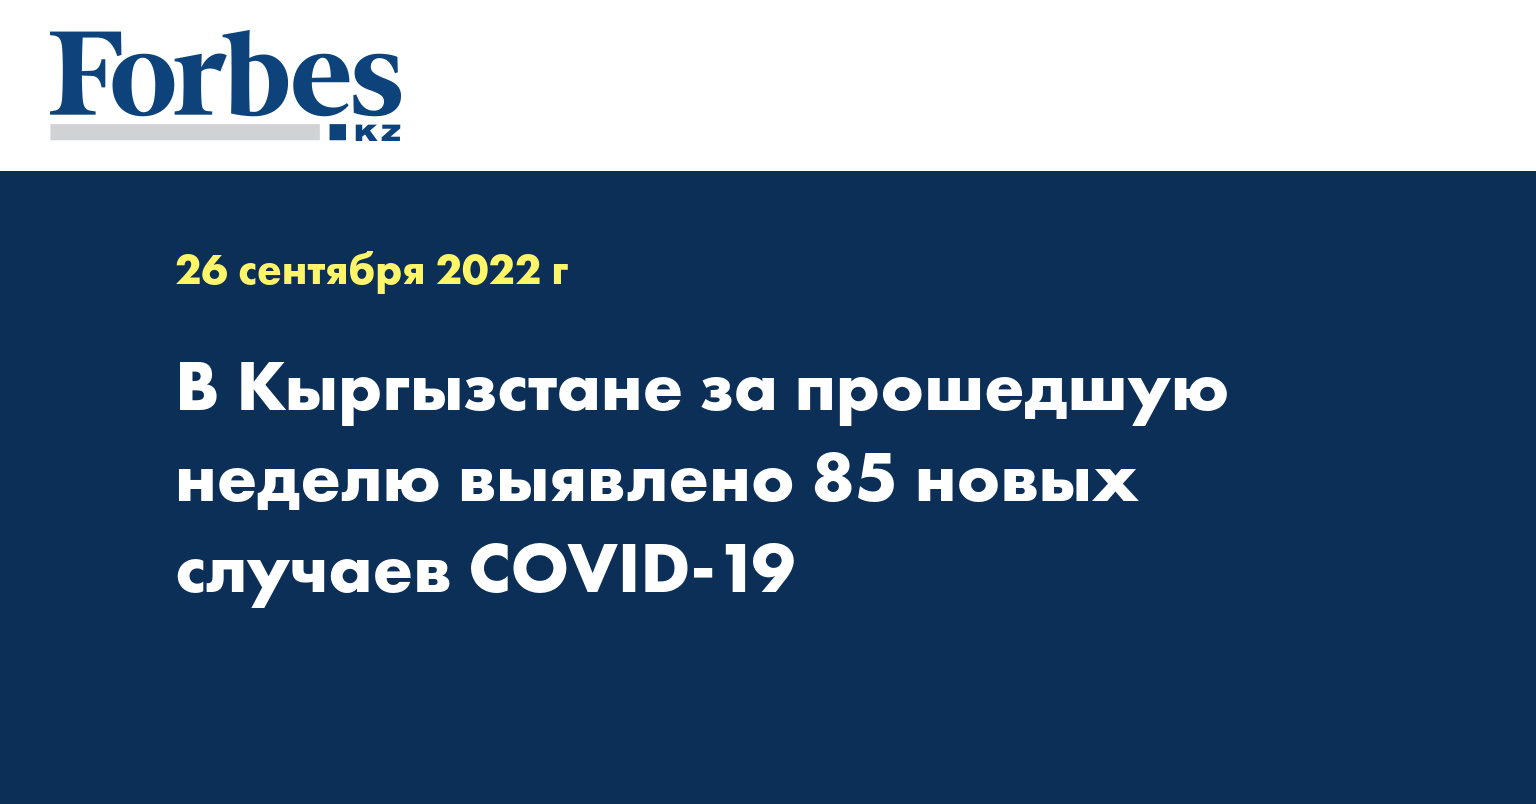 В Кыргызстане за прошедшую неделю выявлено 85 новых случаев COVID-19